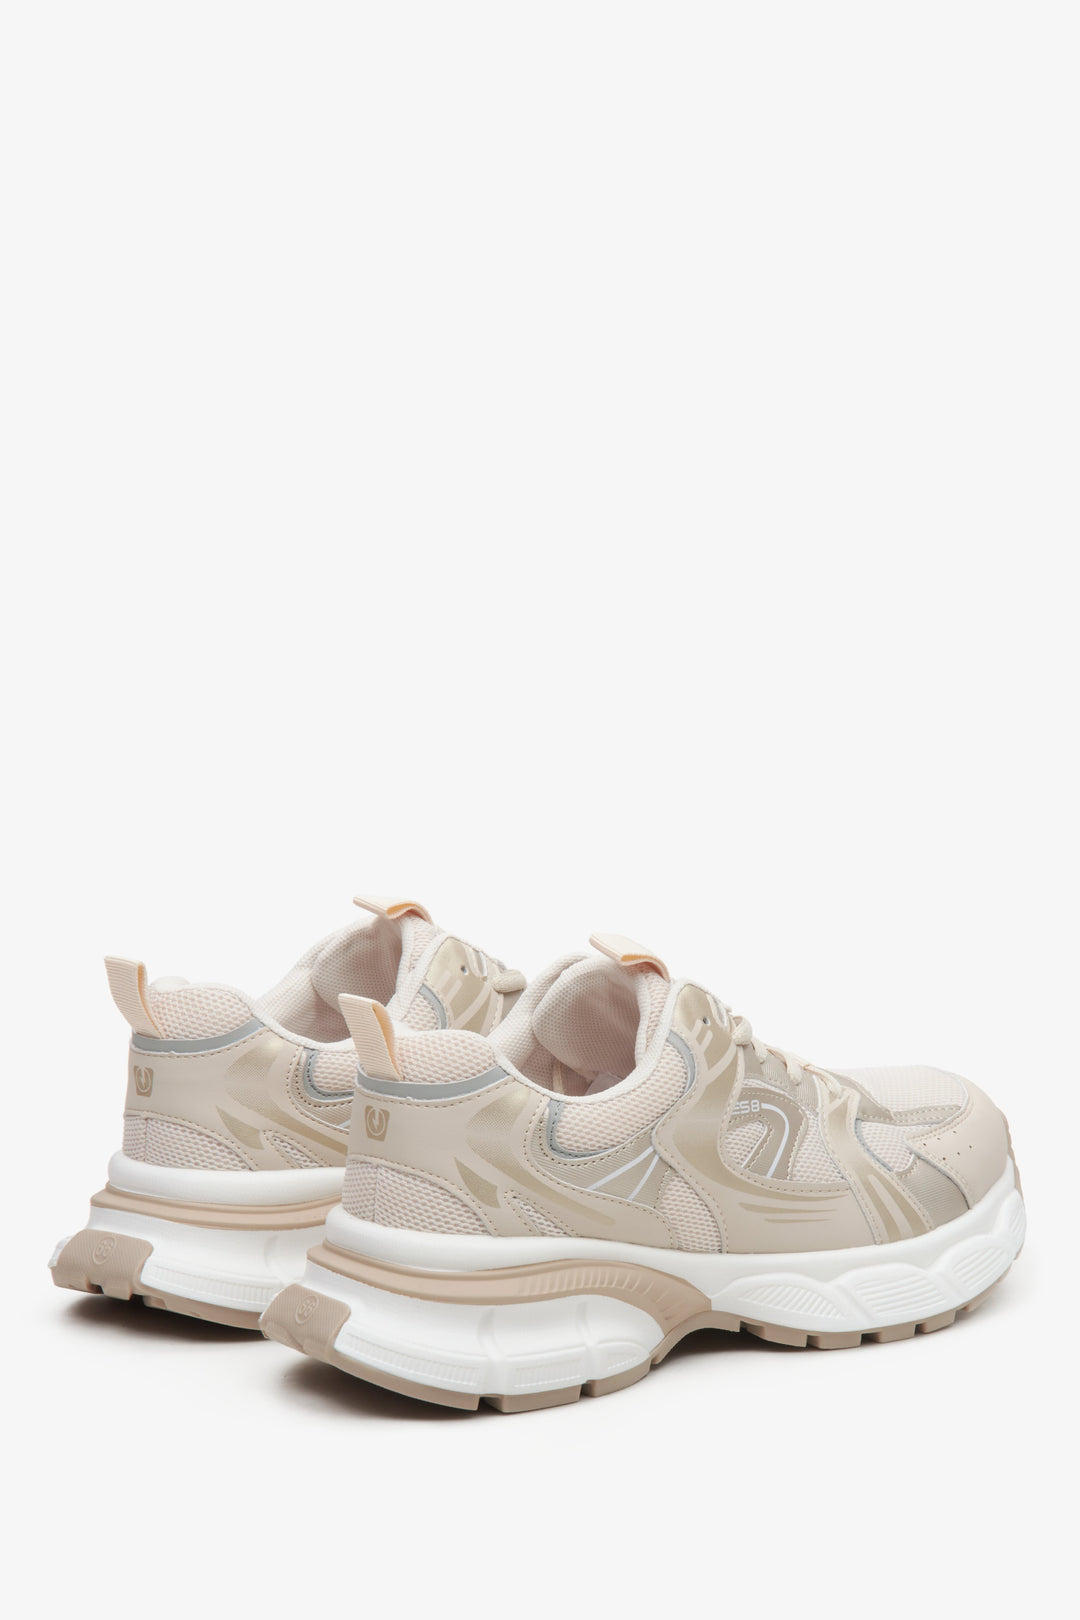 Beżowo-białe sneakersy damskie ES 8 - zbliżenie na zapiętek i linię boczną butów.